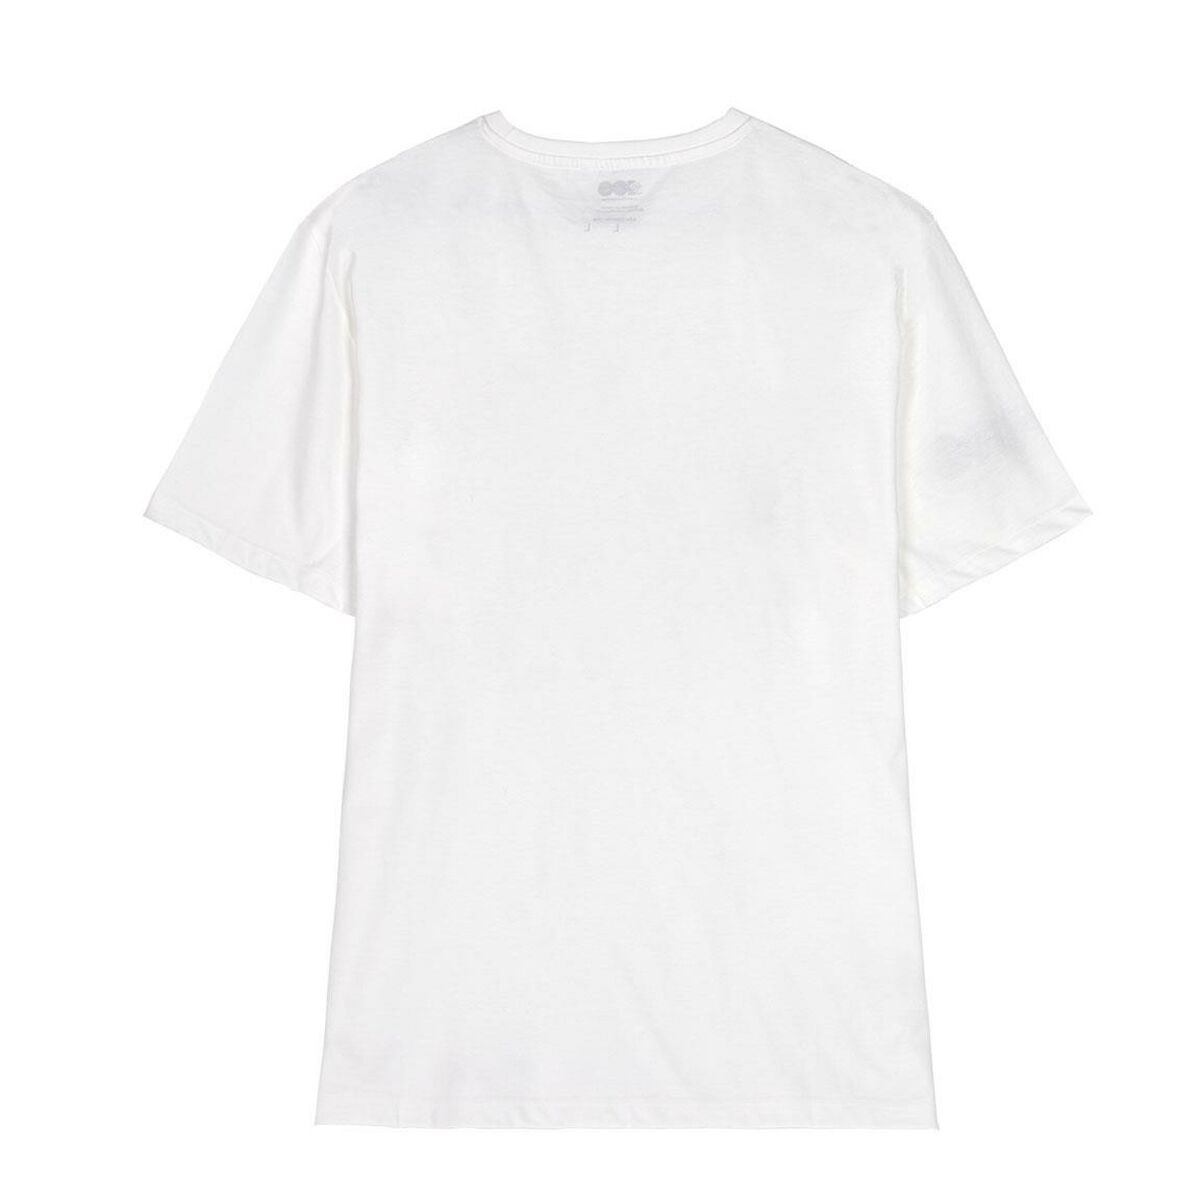 Men’s Short Sleeve T-Shirt Warner Bros White